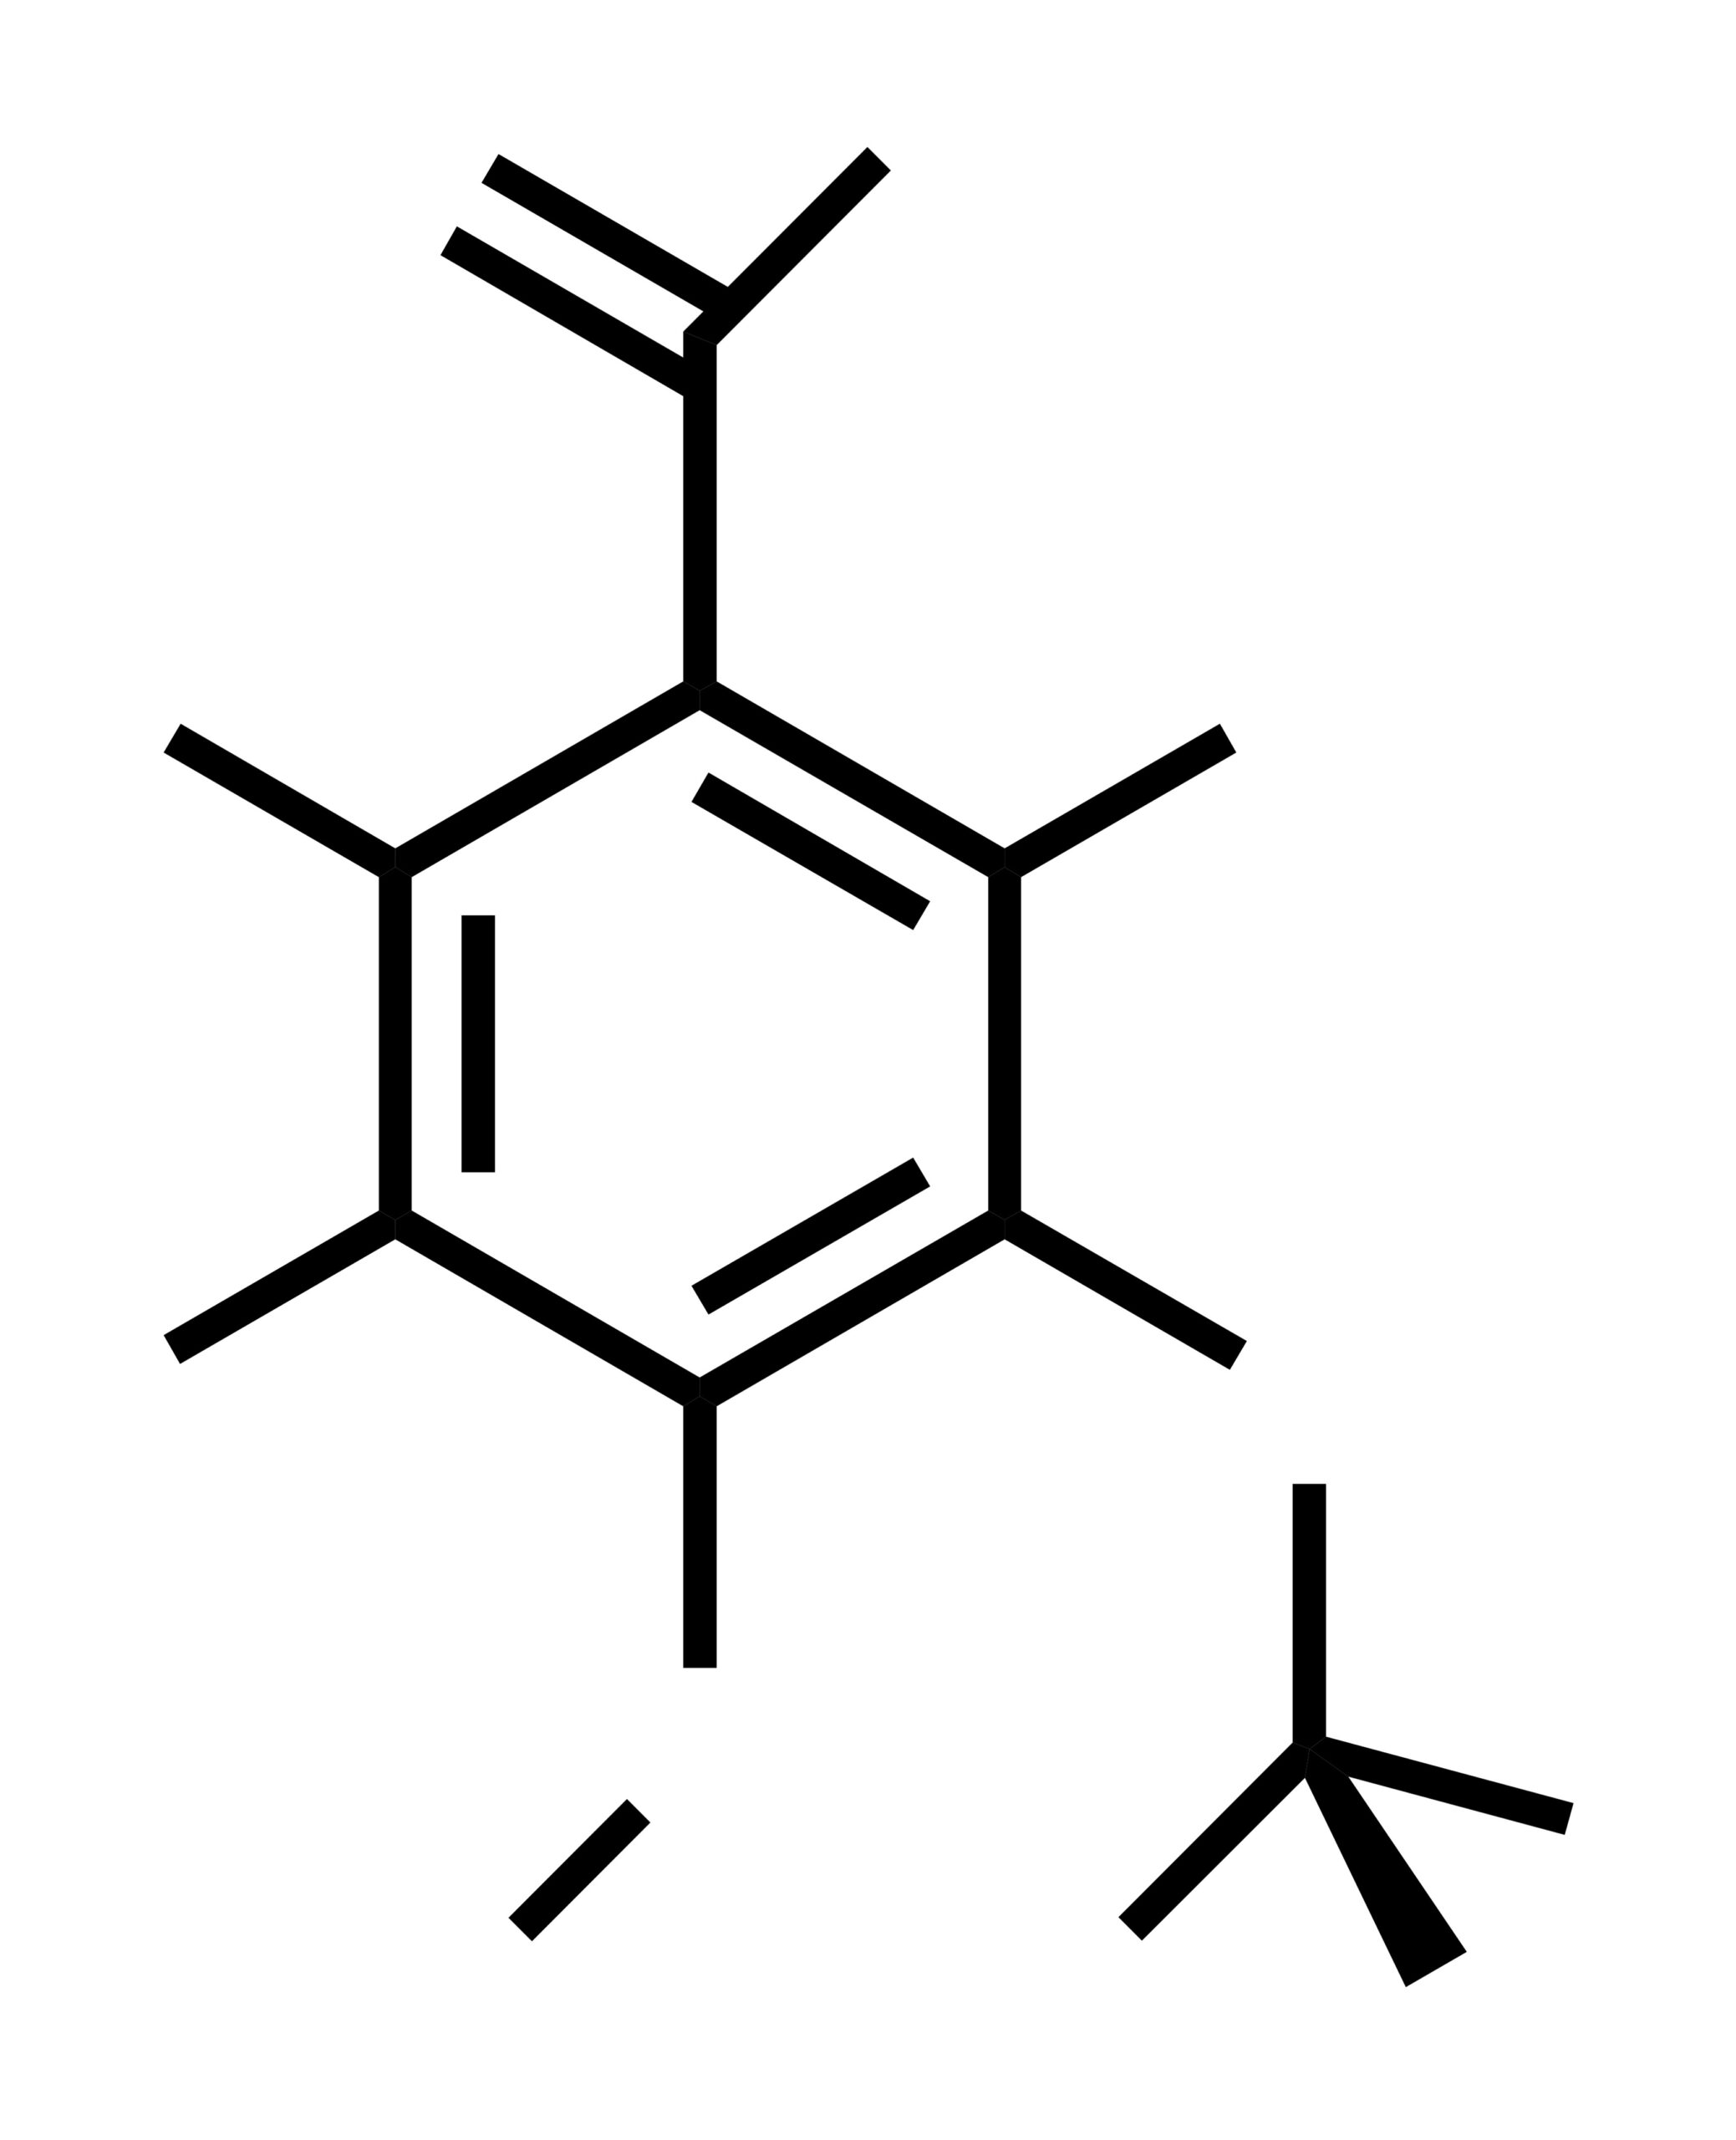 Strukturformel der Aromasubstanz Vanilin